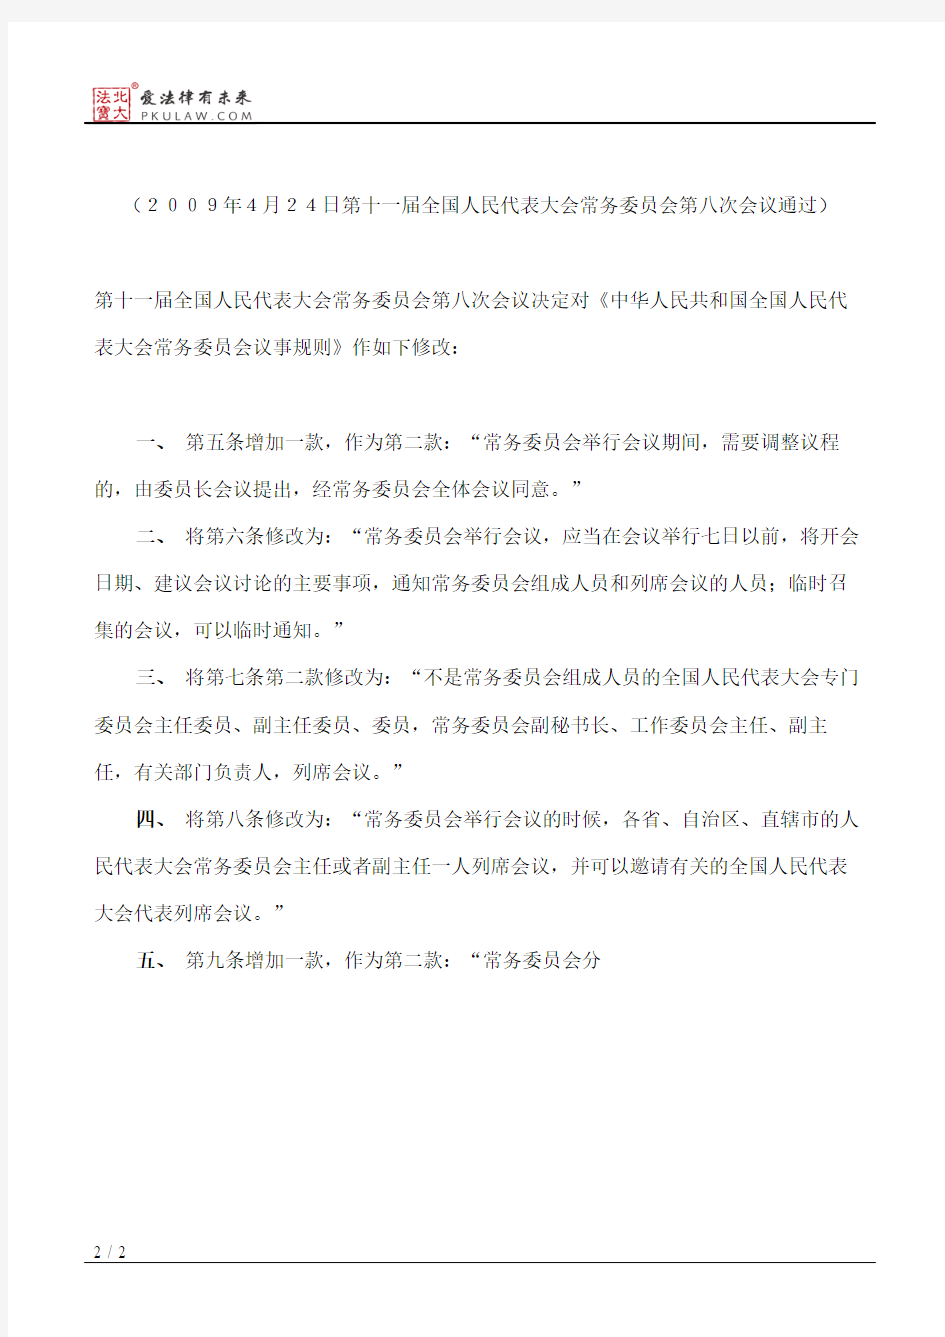 全国人大常委会关于修改《中华人民共和国全国人民代表大会常务委